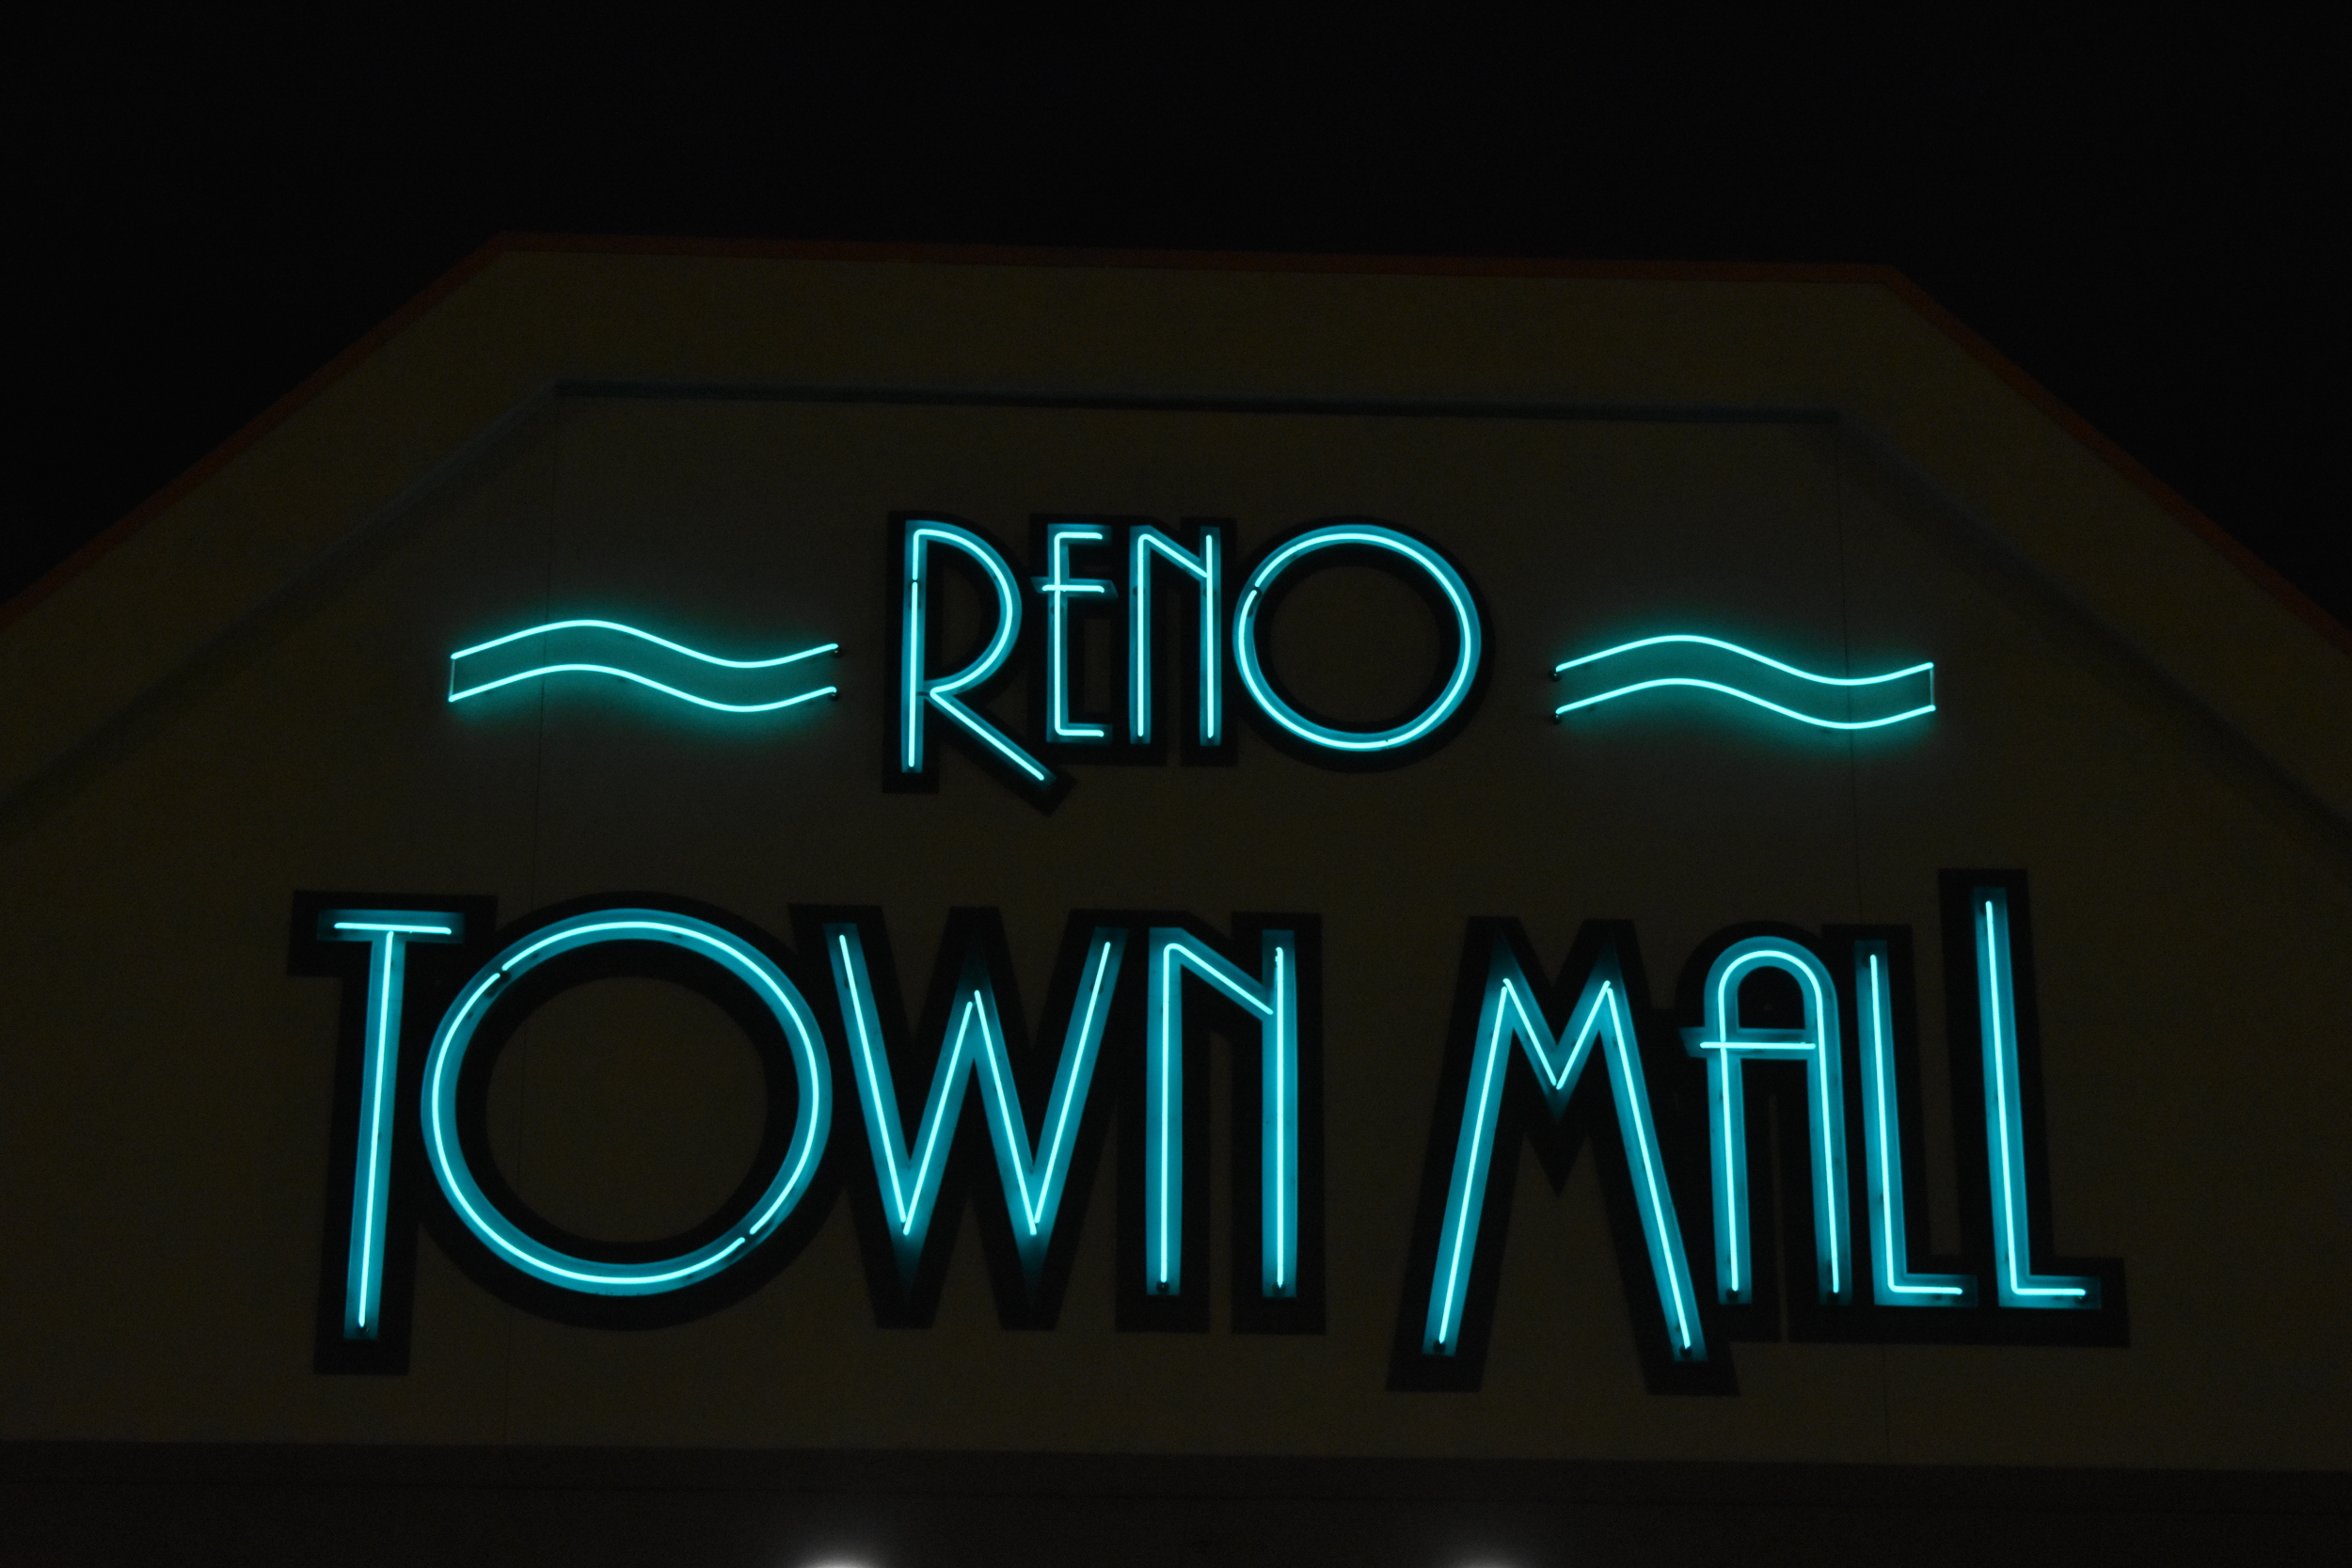 Reno Town Mall wall mounted sign, Reno, Nevada